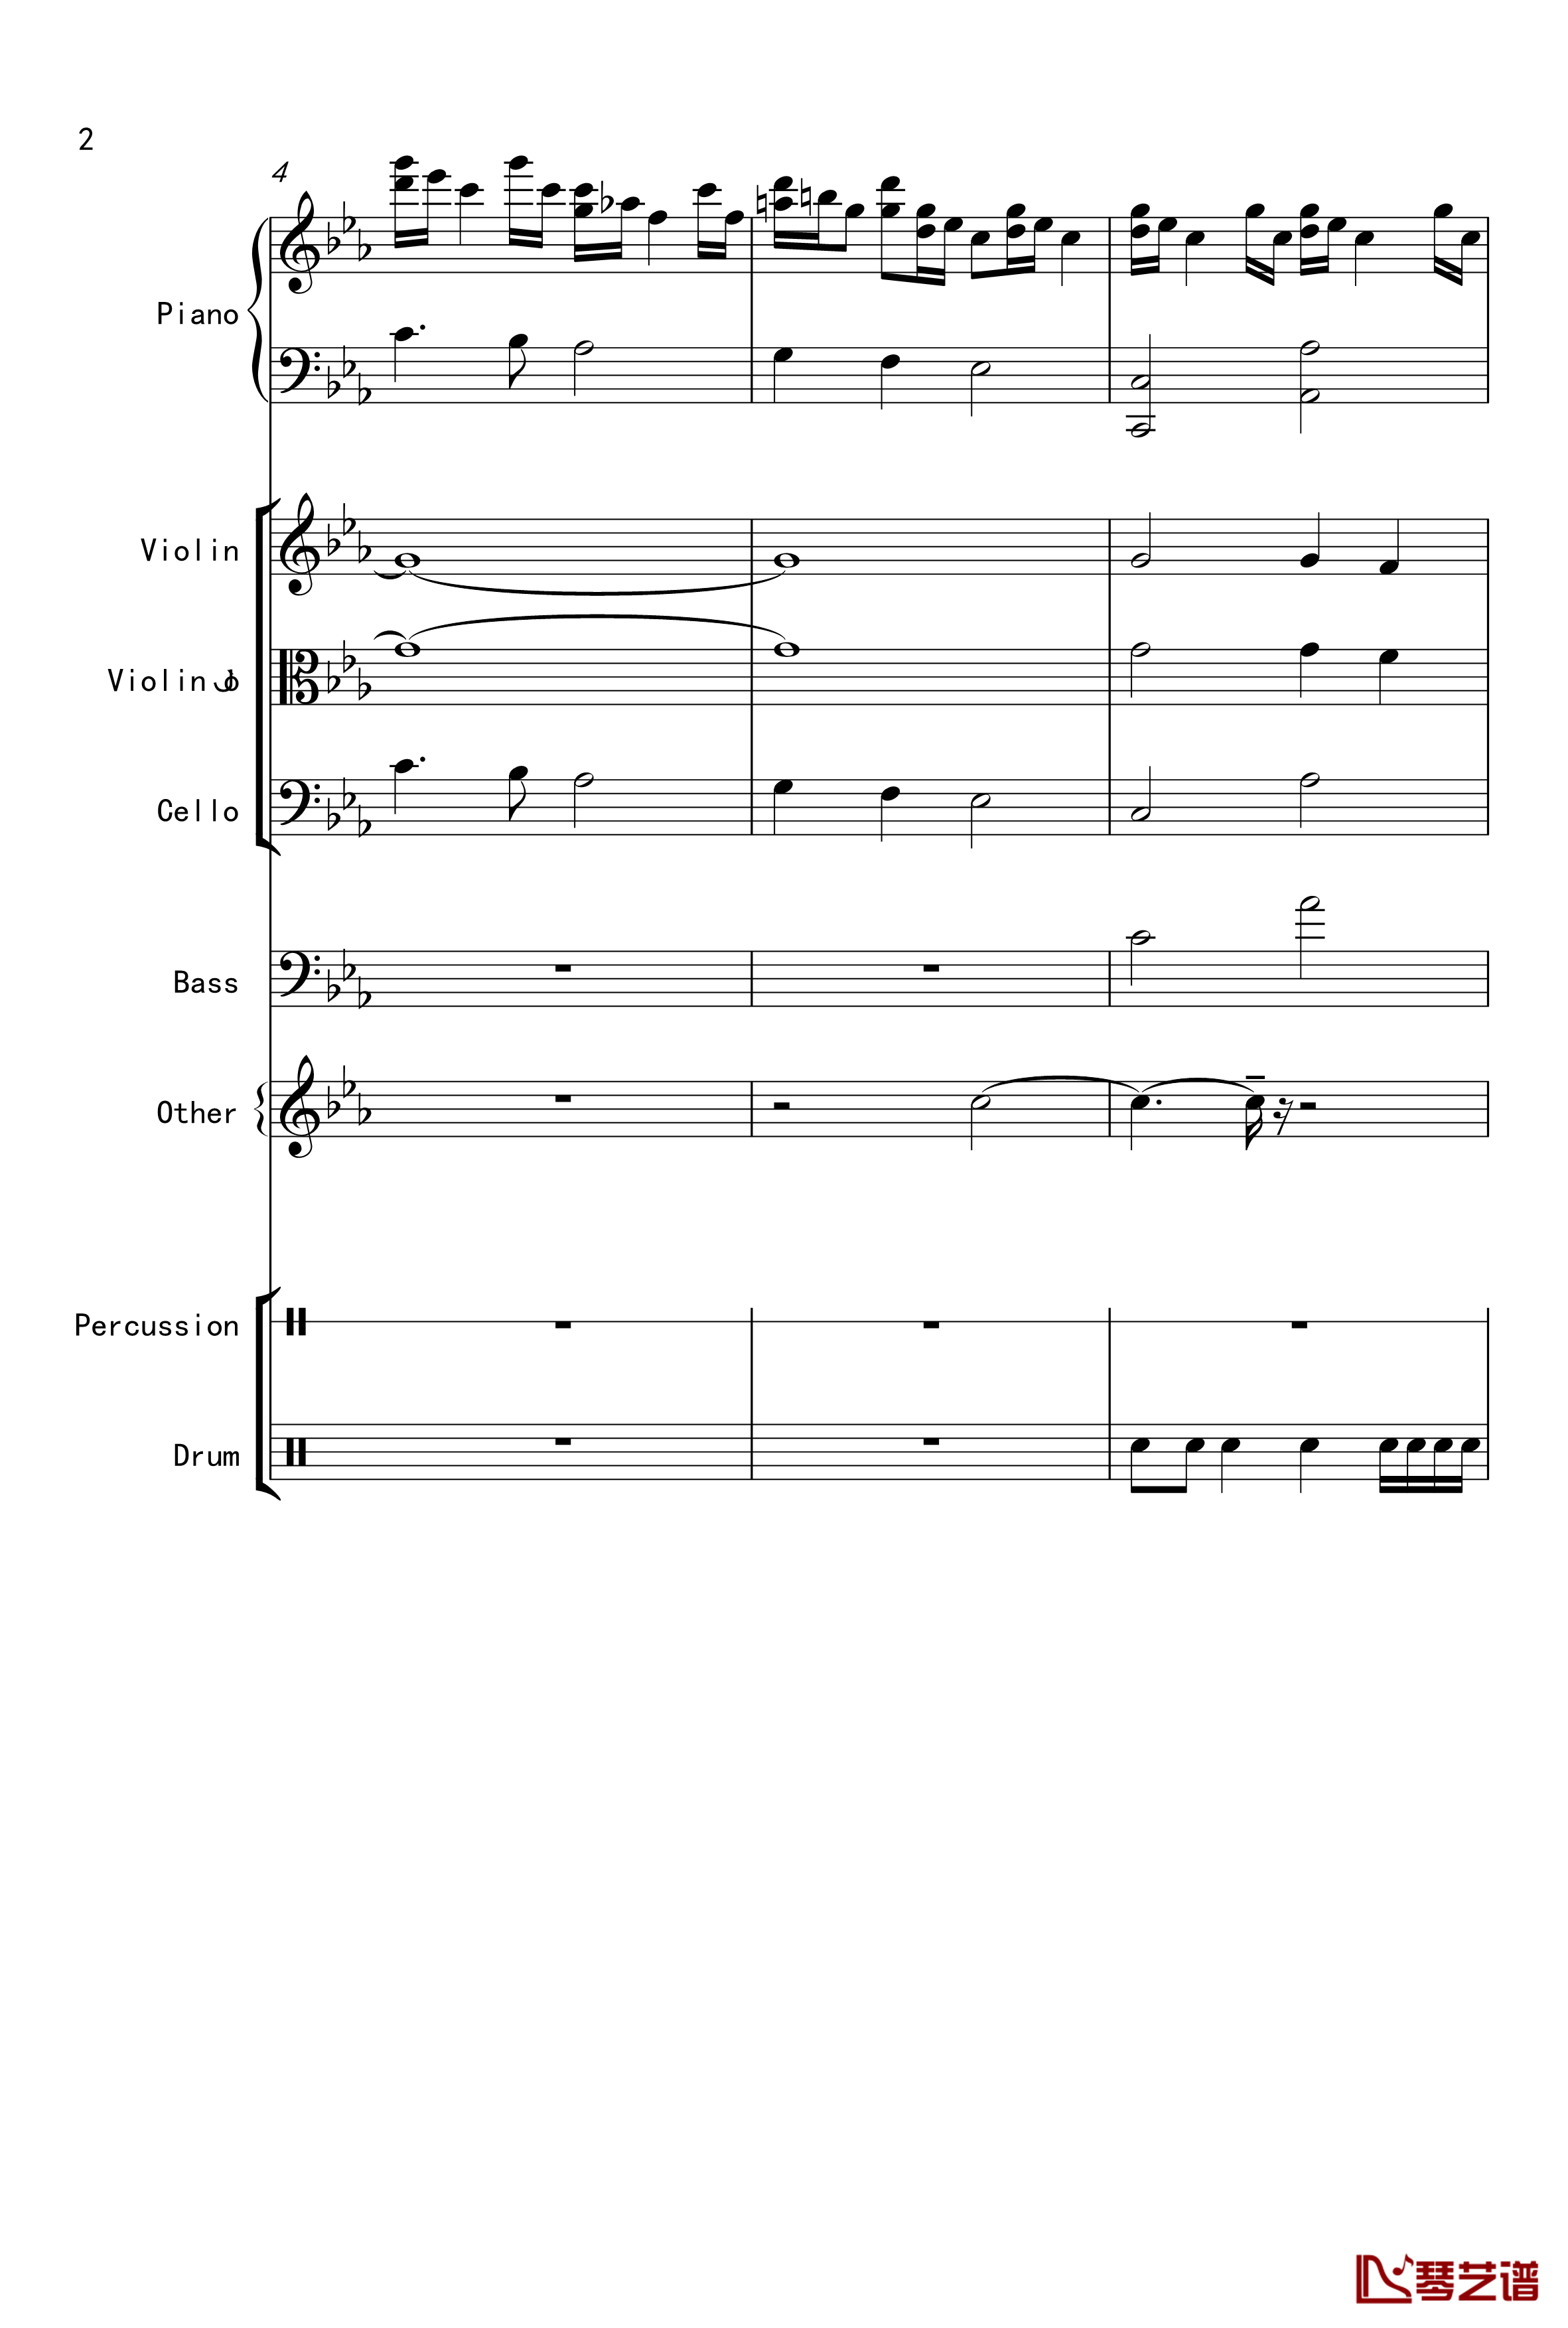 克罗地亚舞曲钢琴谱-Croatian Rhapsody-马克西姆-Maksim·Mrvica2